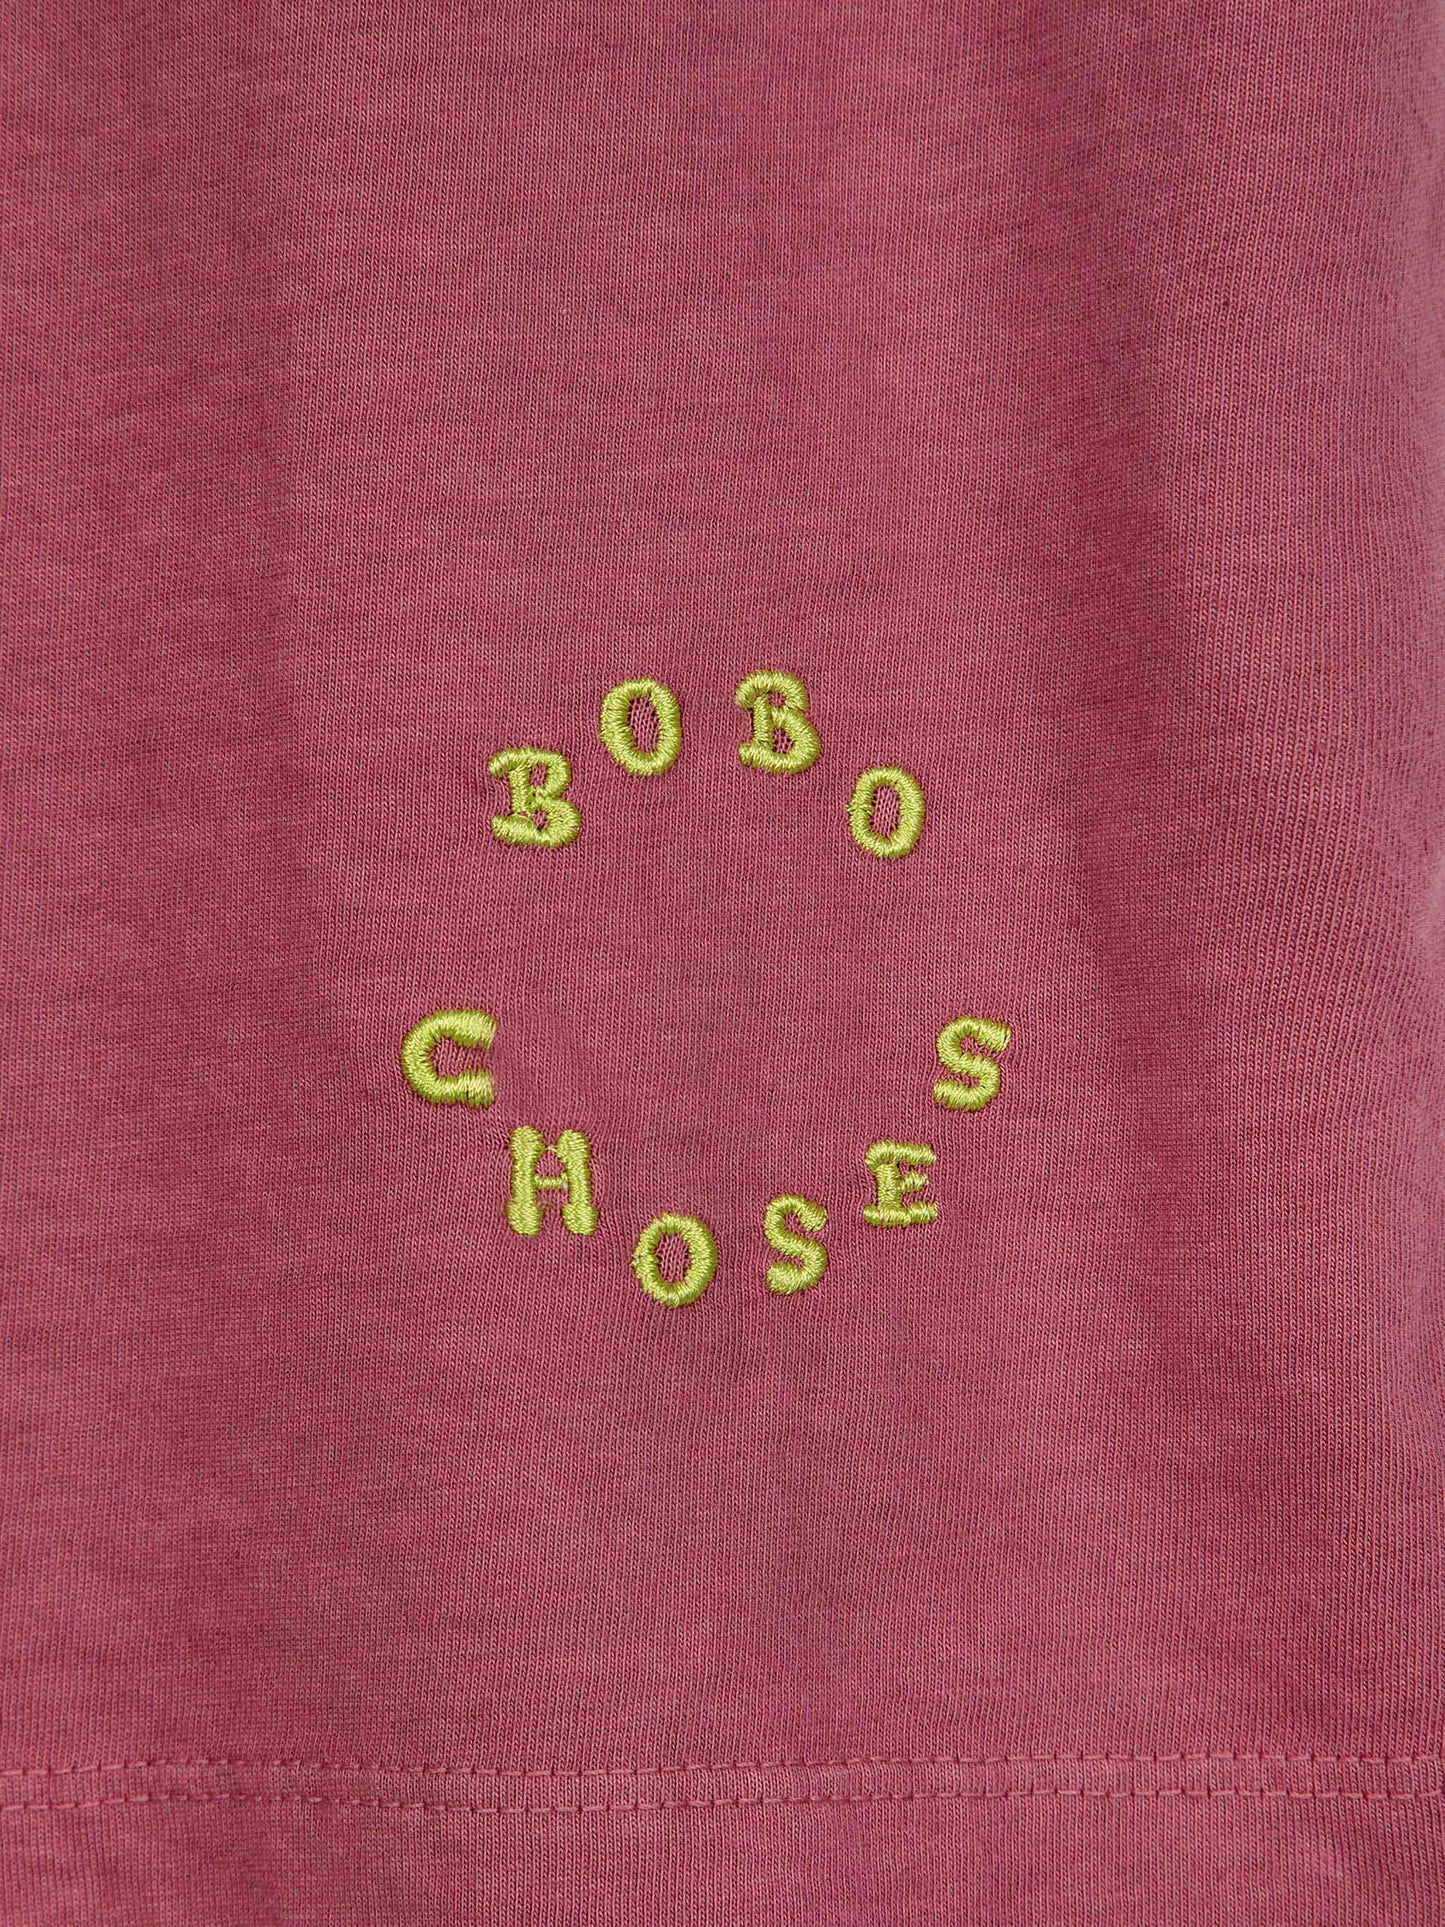 Camiseta de tirantes Bobo Choses